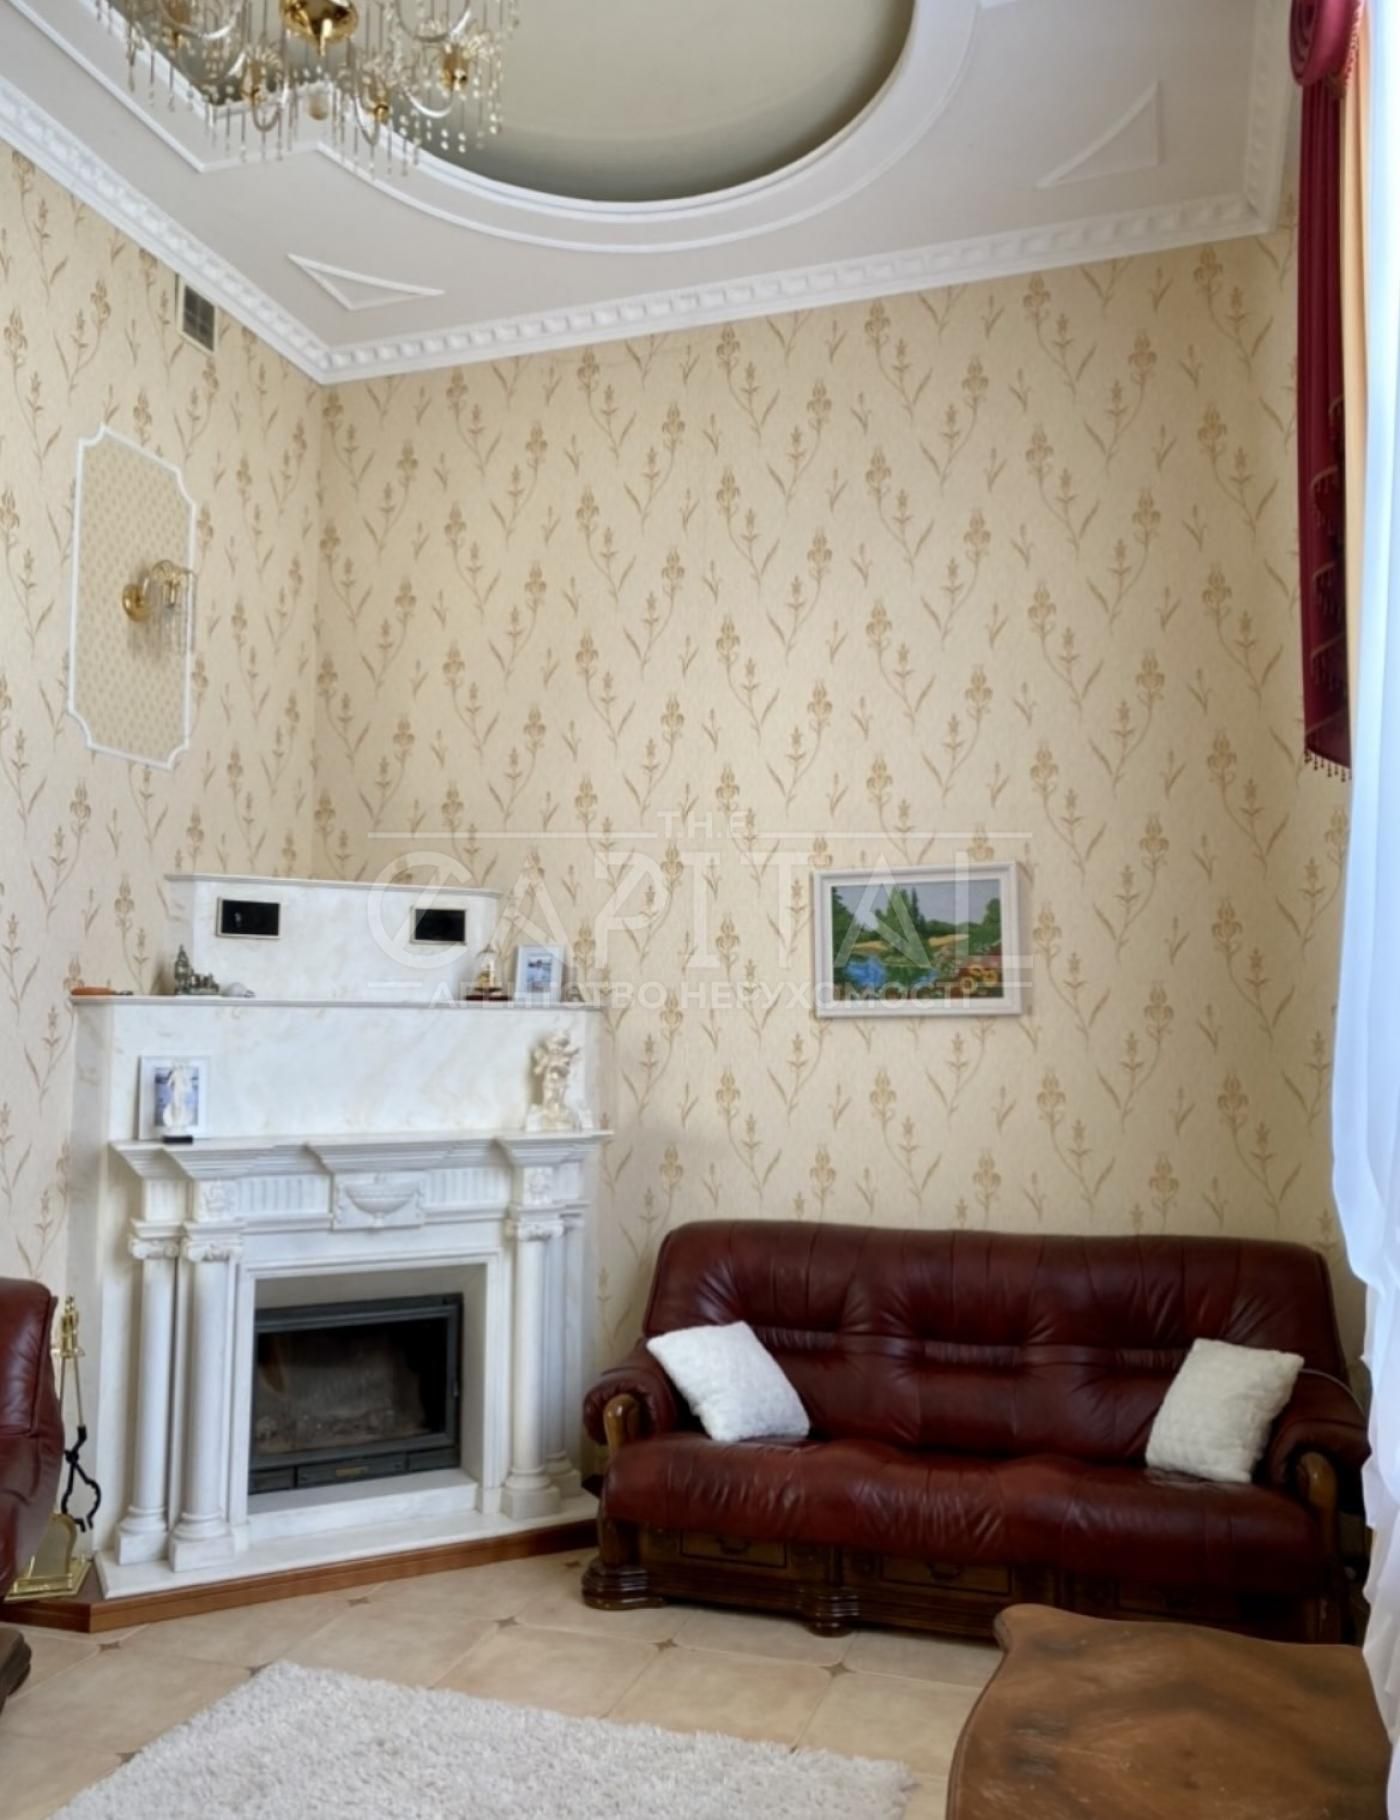 Продаж 3-поверхового будинку в с. Петропавлівське, Бориспільський